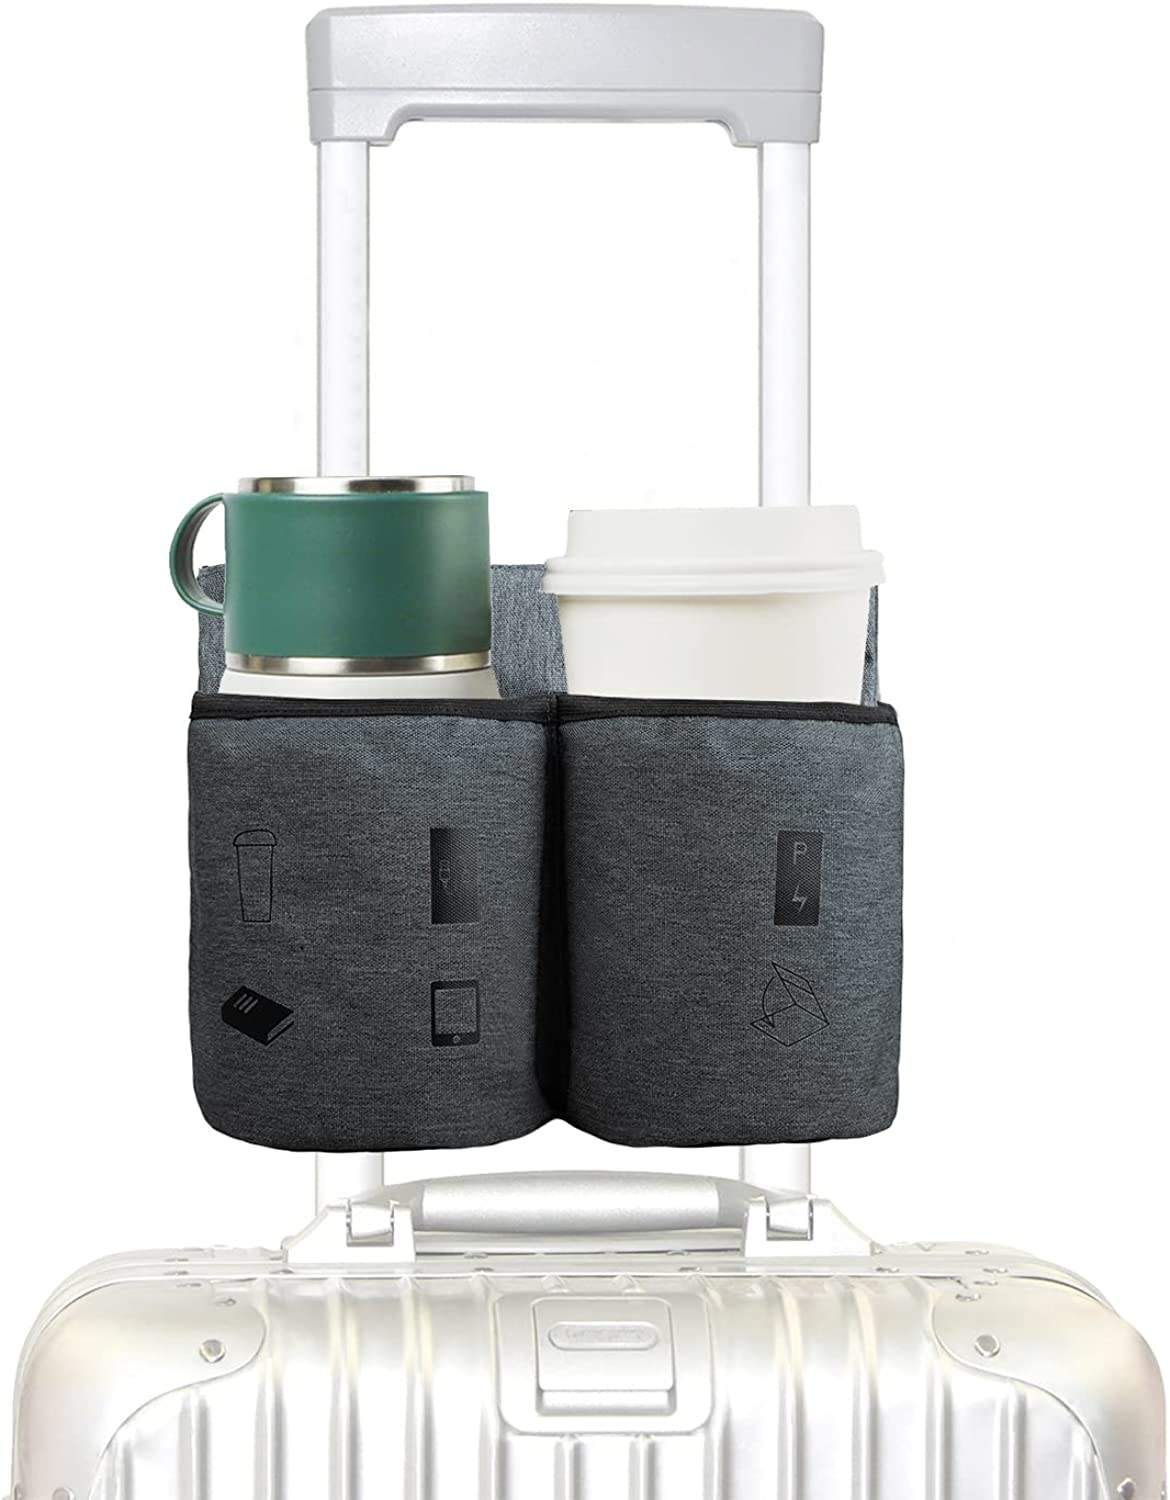 Fabrik-OEM-OEM-Gepäck-Reise-Getränkebeutel-Getränkehalter, passend für alle Koffergriffe, Freihand-Getränke-Caddy